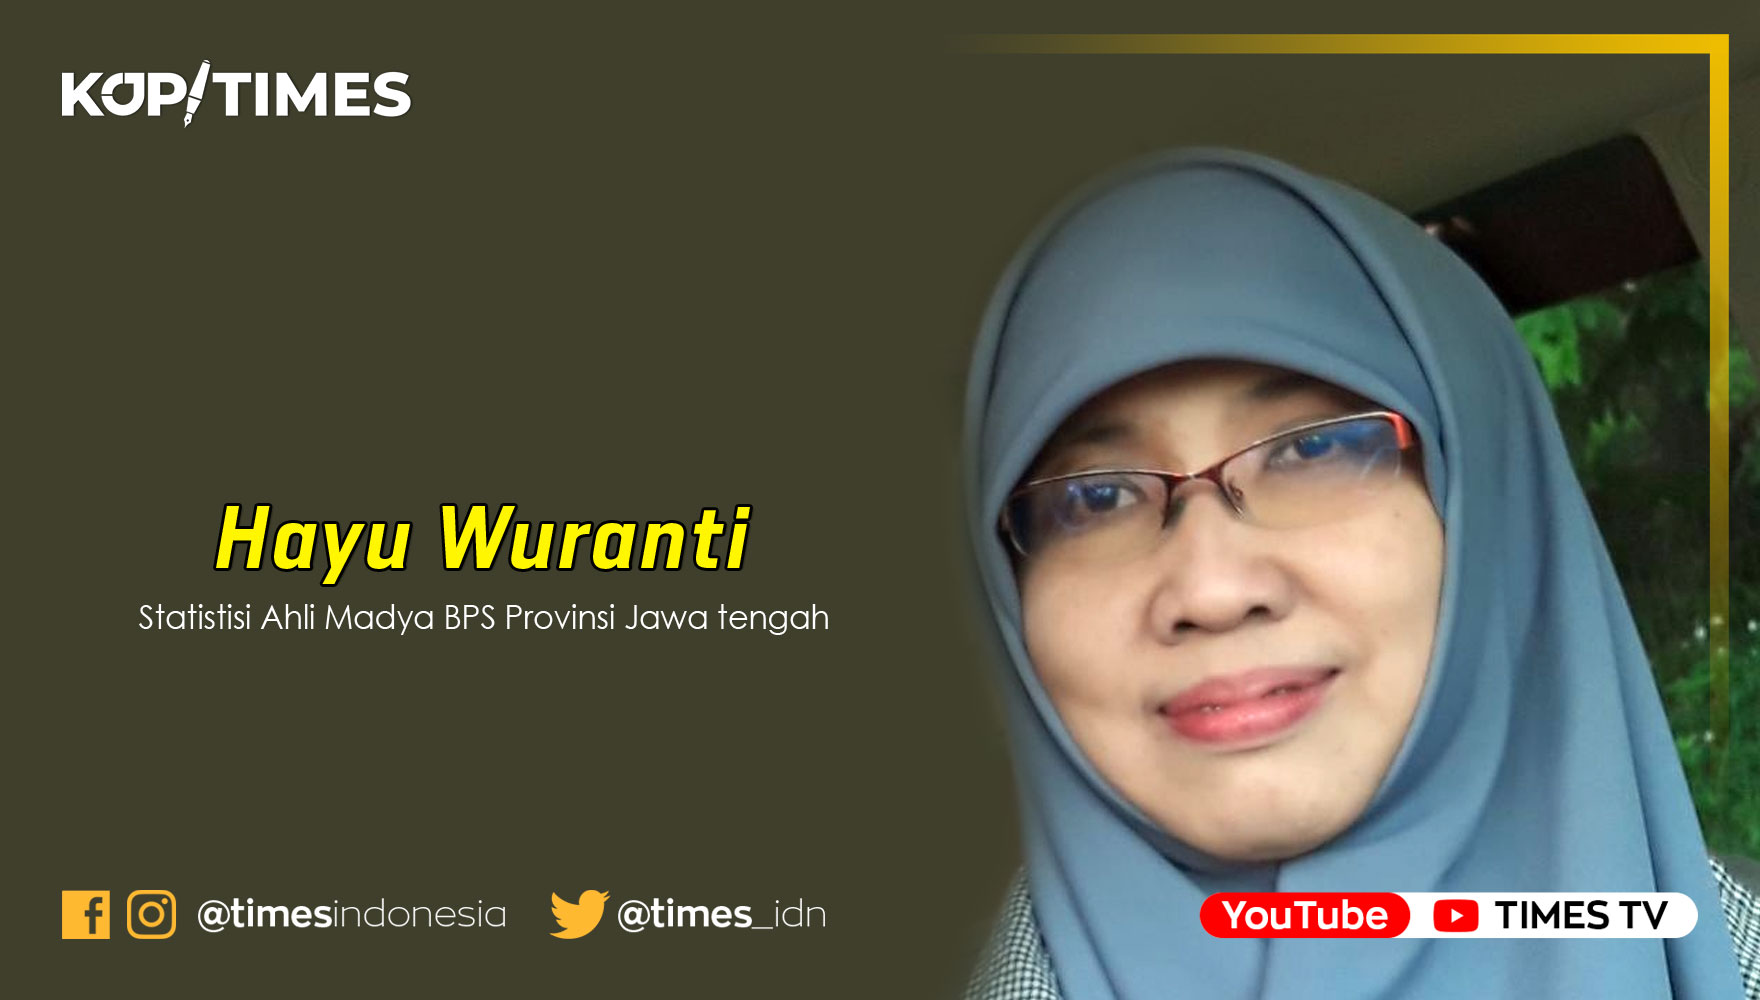 Hayu Wuranti, Statistisi Ahli Madya BPS Provinsi Jawa Tengah.